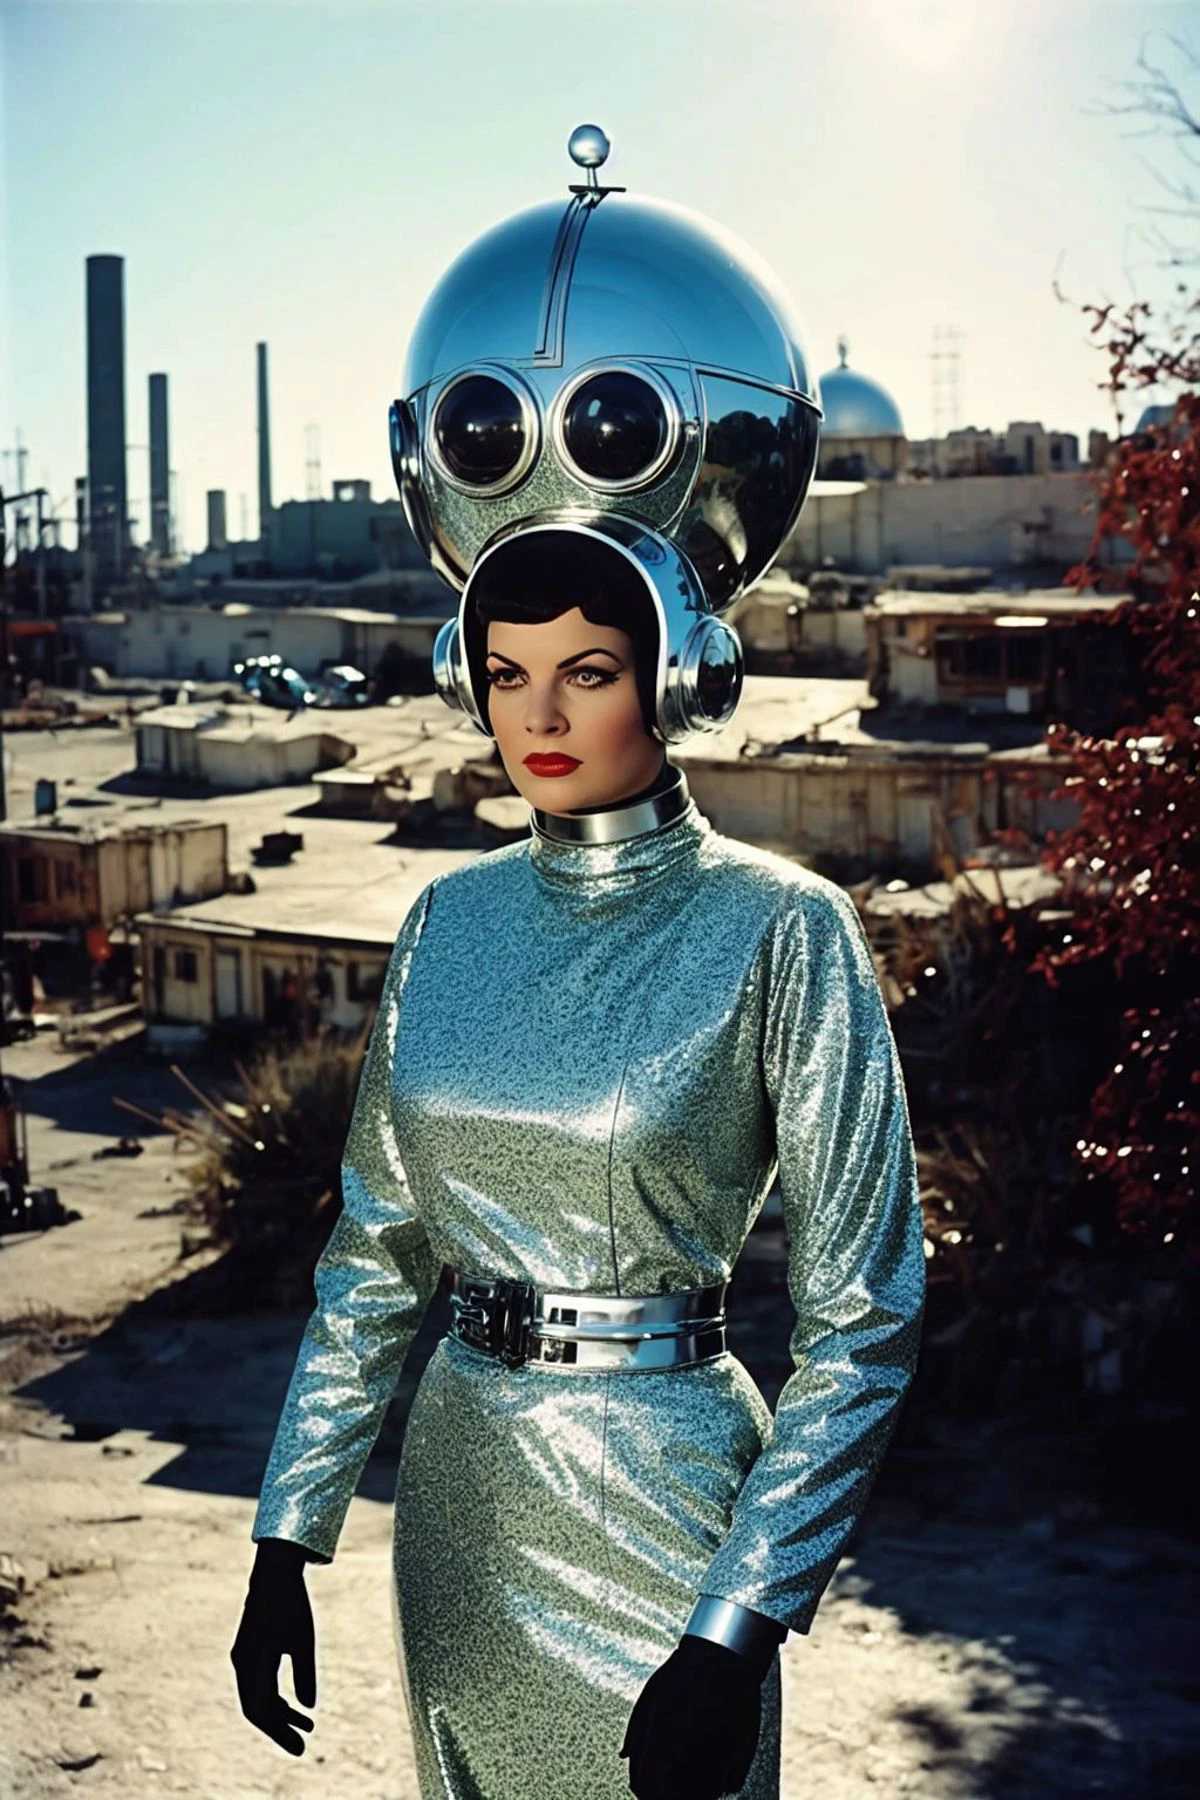 film analogique campy tiré d&#39;un film de science-fiction soviétique des années 1960,  Android mécanique féminin grec comme cyborg avec tête positronique, harnais d&#39;horlogerie, (SFW:1.2), intérieur éclectique du biodôme, ruines extraterrestres en arrière-plan, sur la pointe des pieds, regard intense, pose de mode, espace glam chic, Kitsch,cinématique,Farfelu,paillettes,rétro, netteté, lentille Grand angle, scénique